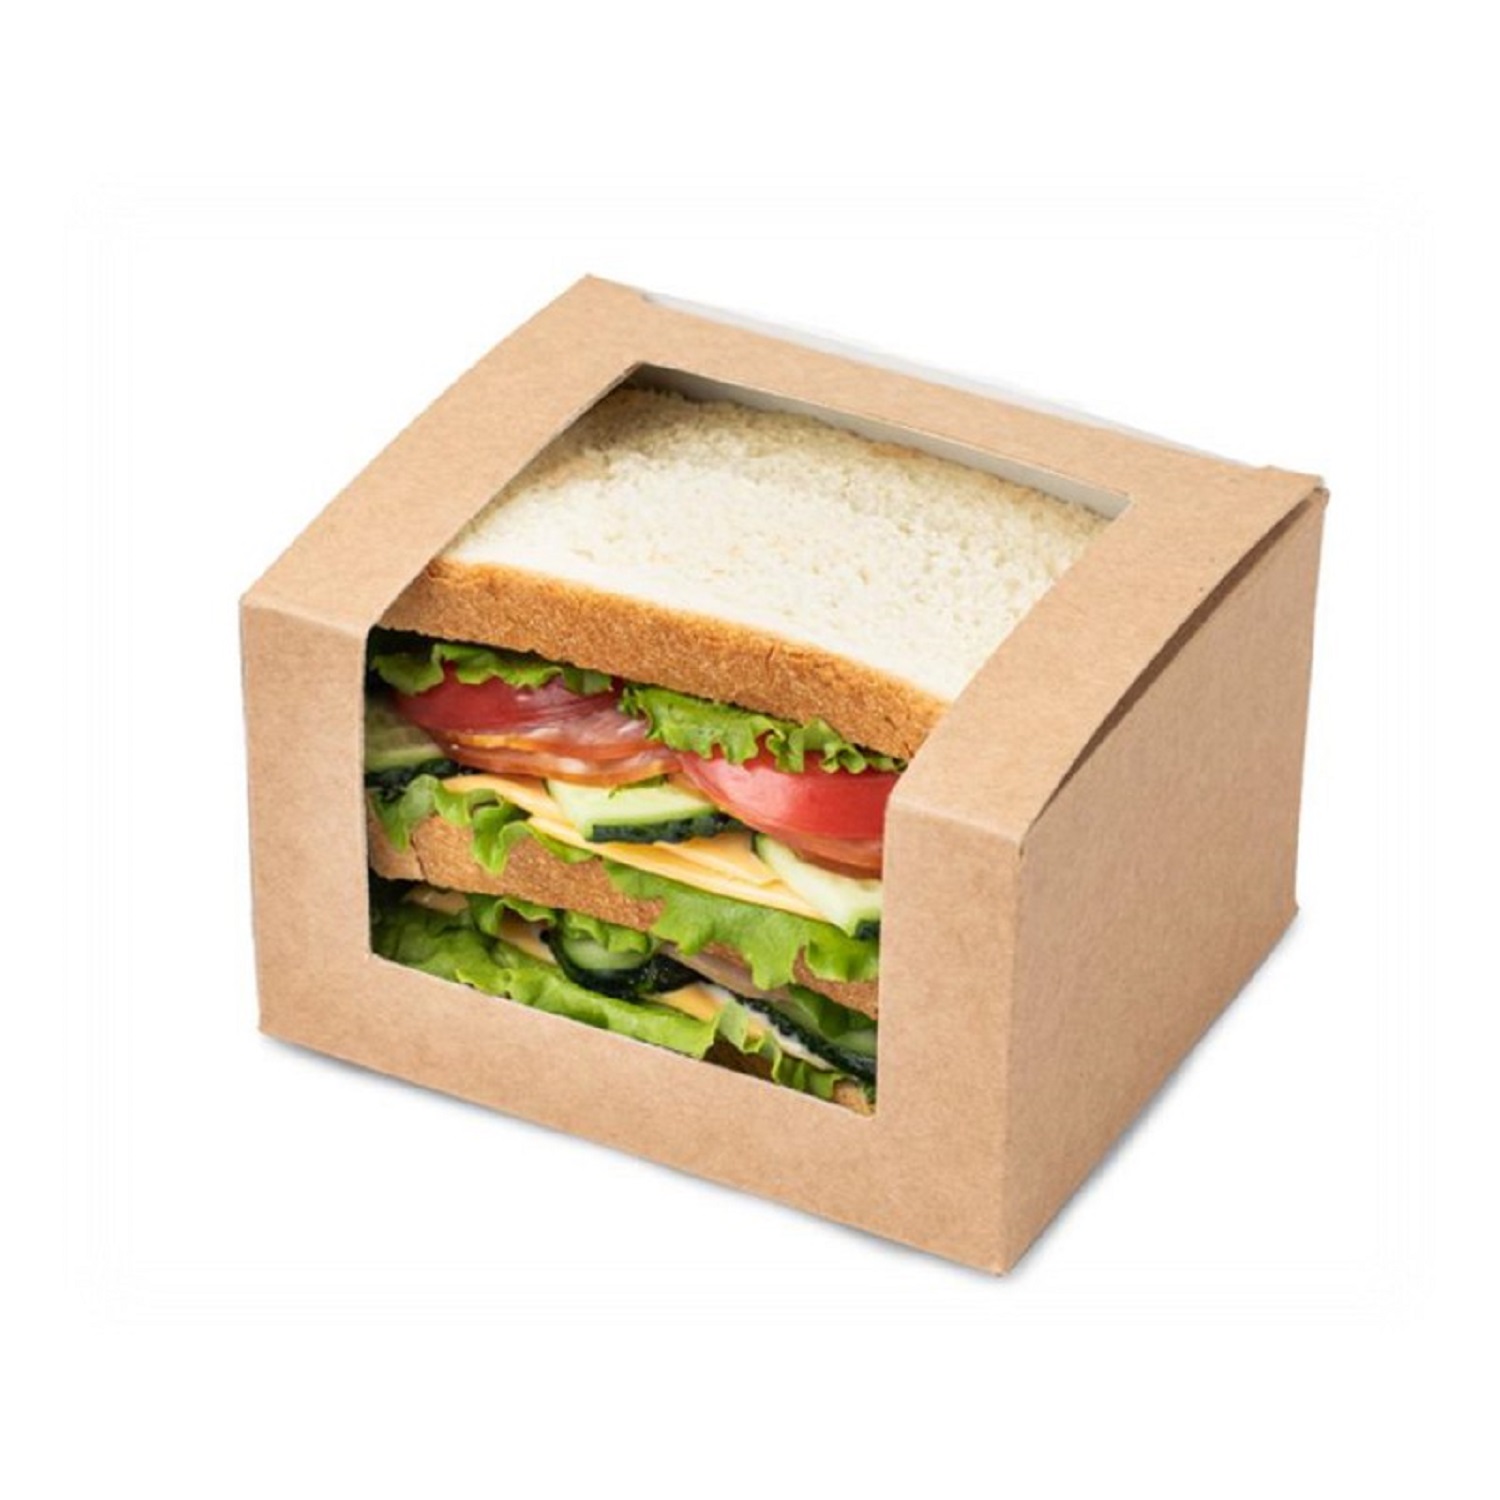 OSQ Square Cut sandwich box Упаковка для сэндвичей 12,5х10,0х7,0см